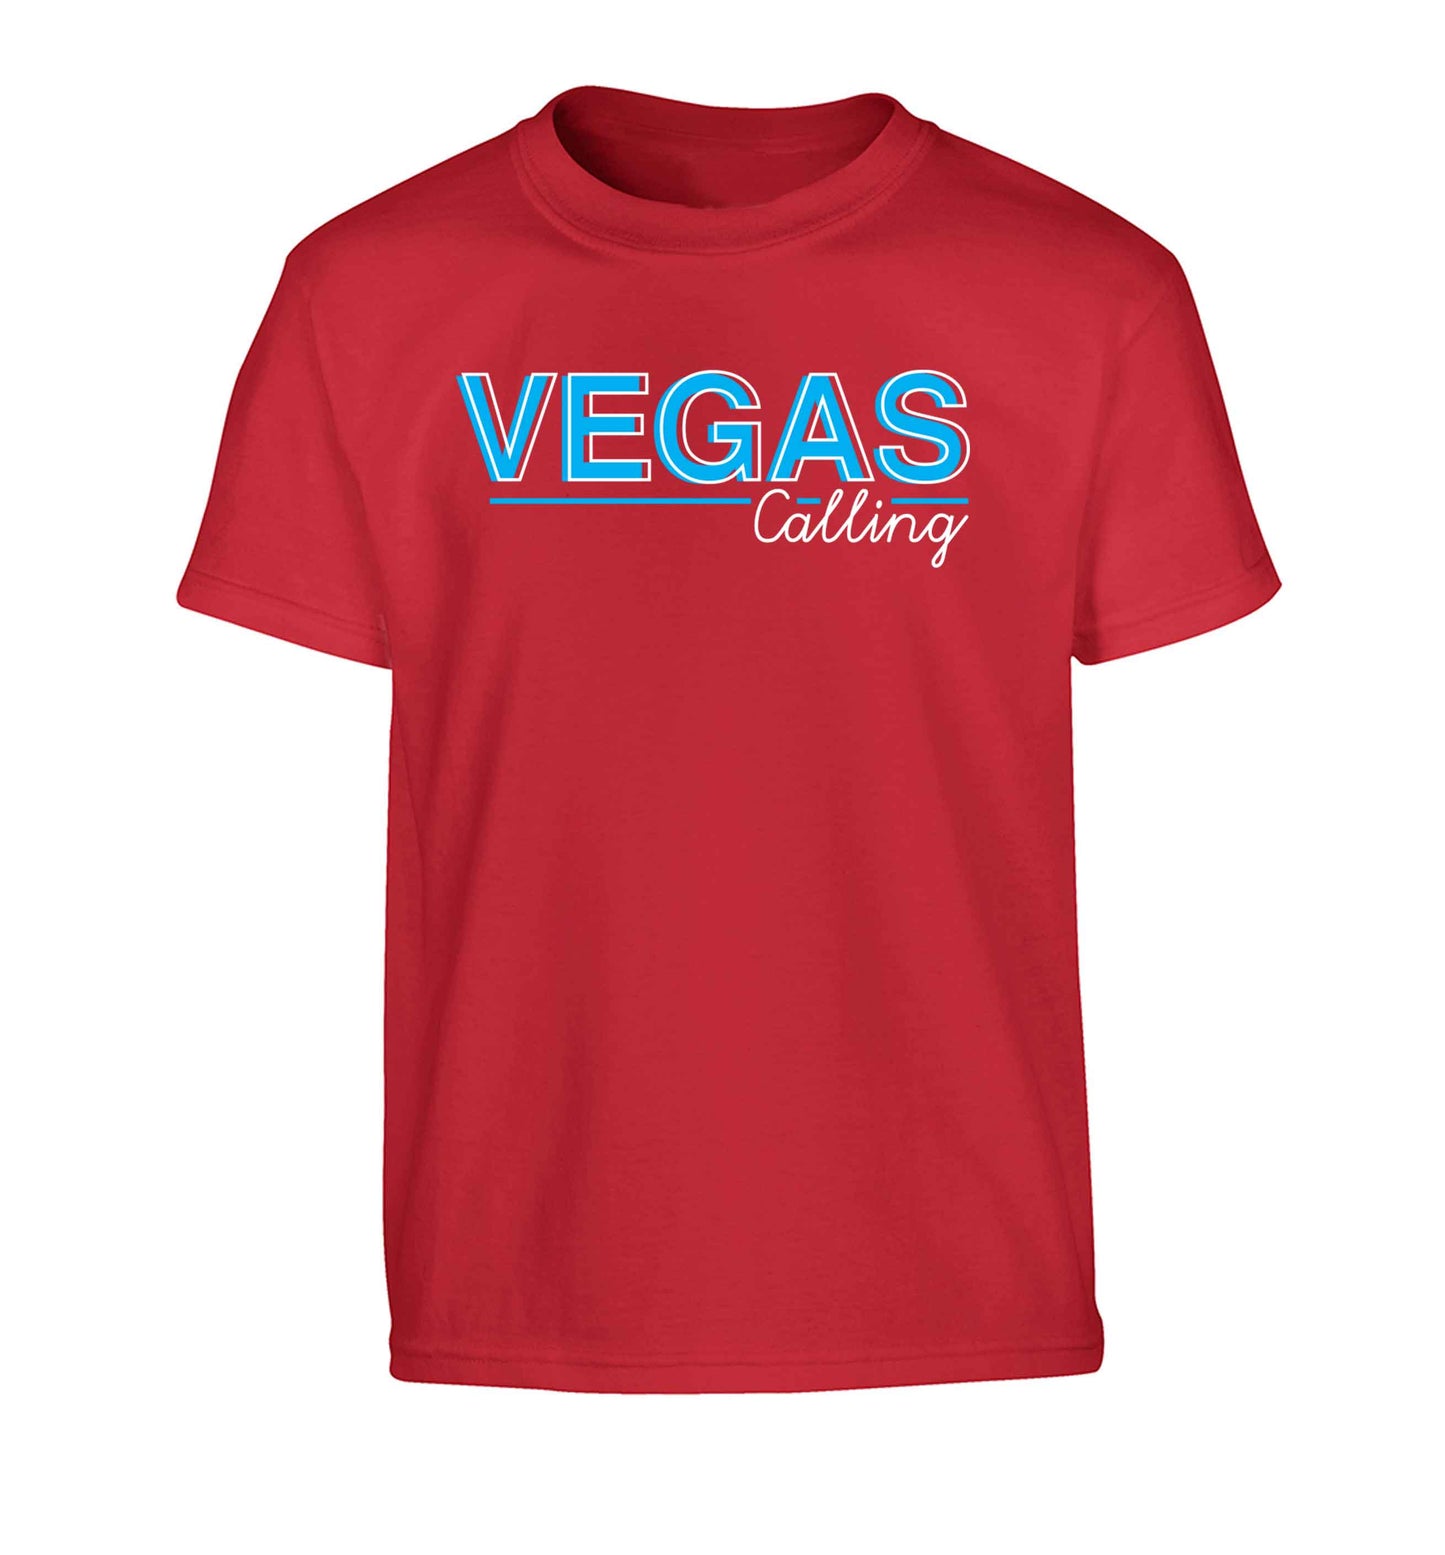 Vegas calling Children's red Tshirt 12-13 Years